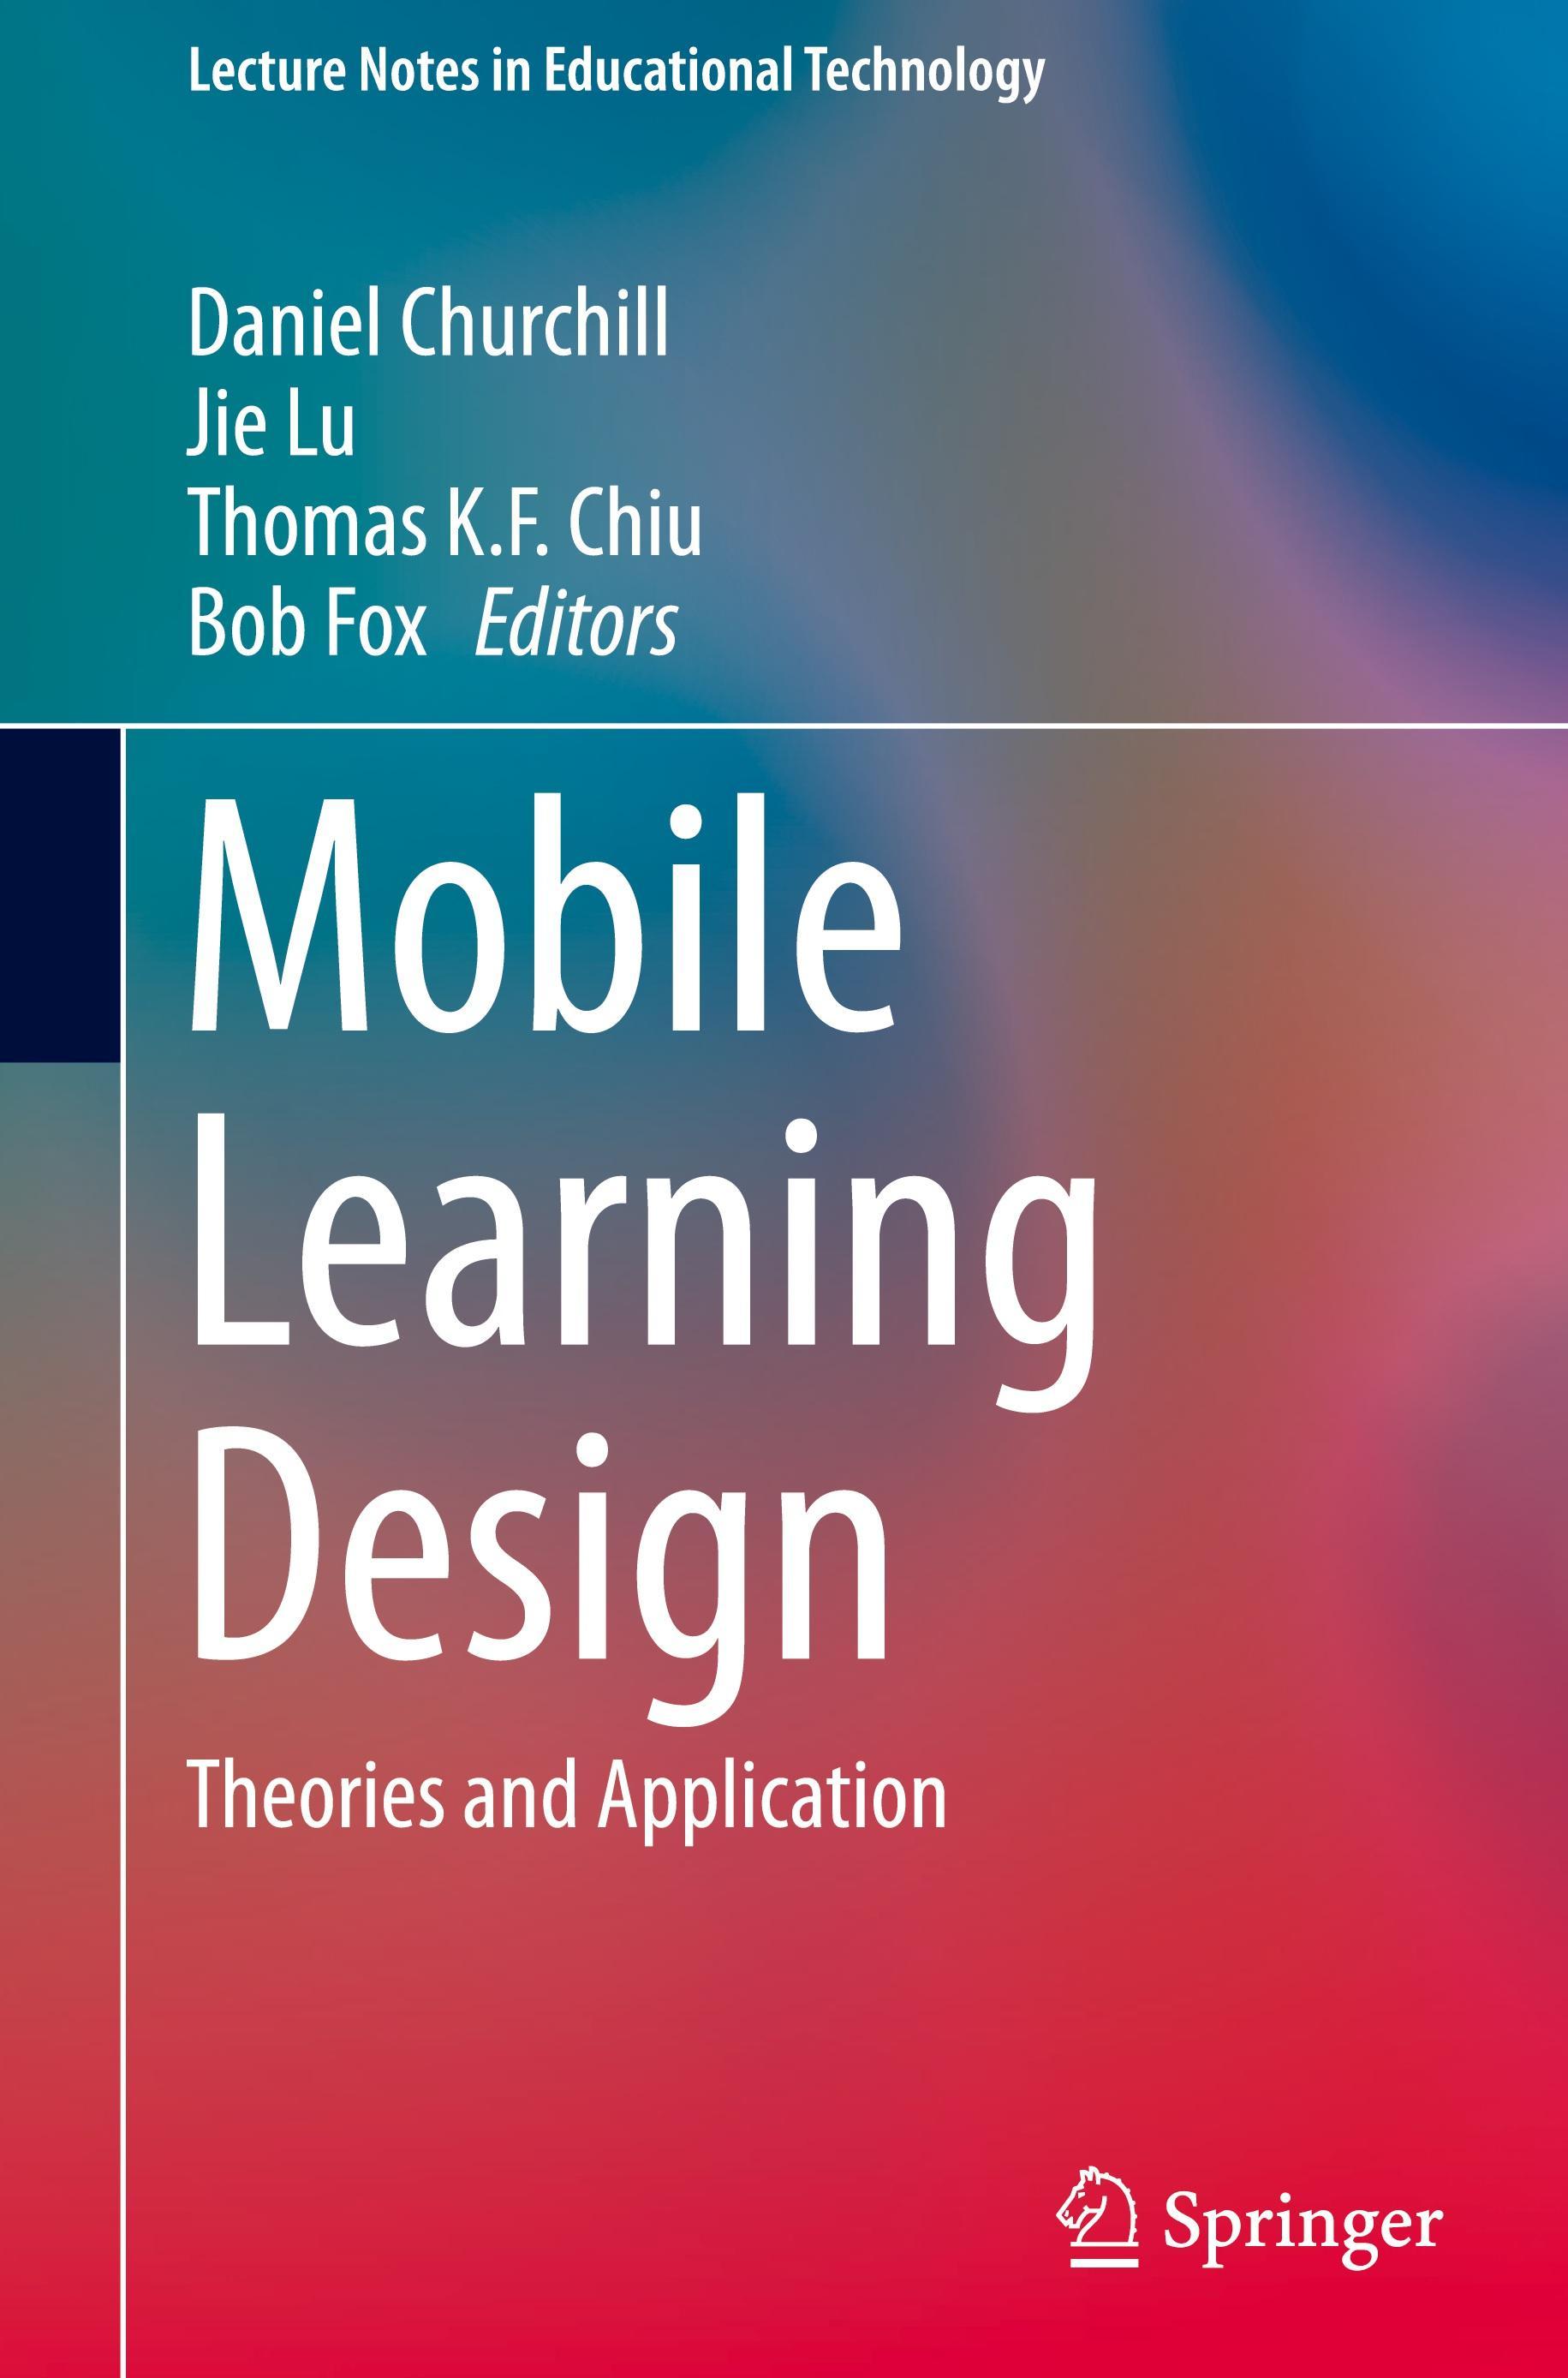 Mobile　Buch　Learning　bei　bestellen　Design　versandkostenfrei